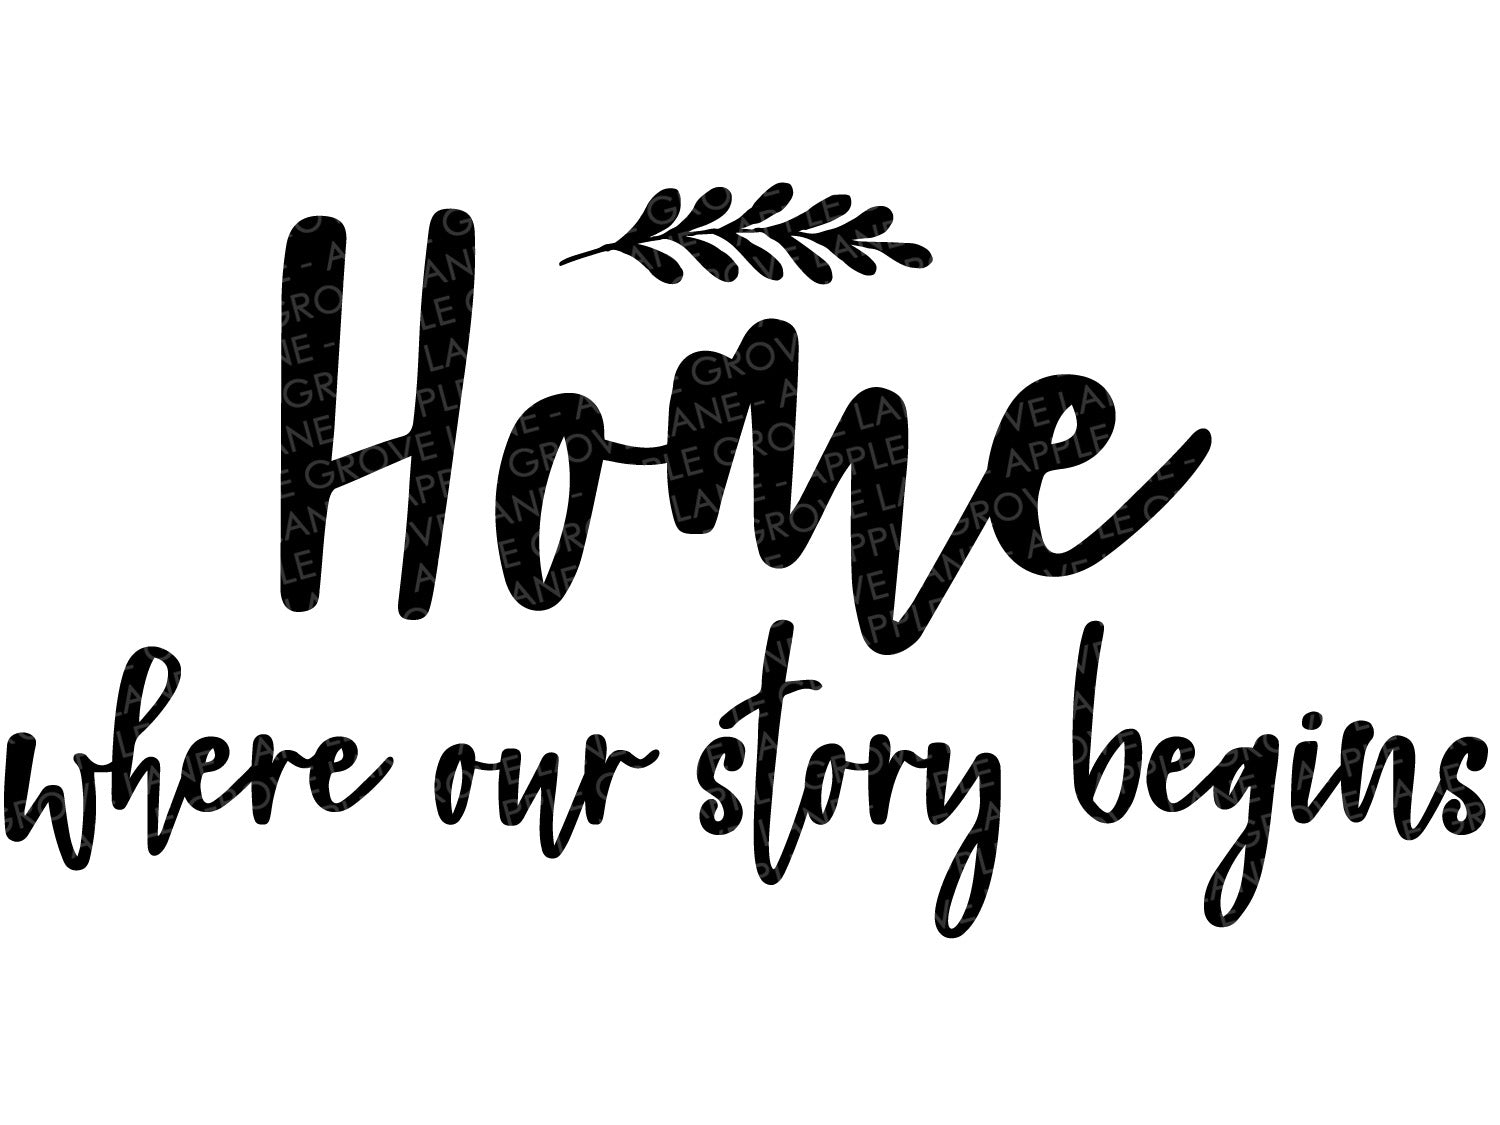 Download Our Story Begins Svg Home Svg Family Svg Home Sign Svg Home Clipar Apple Grove Lane